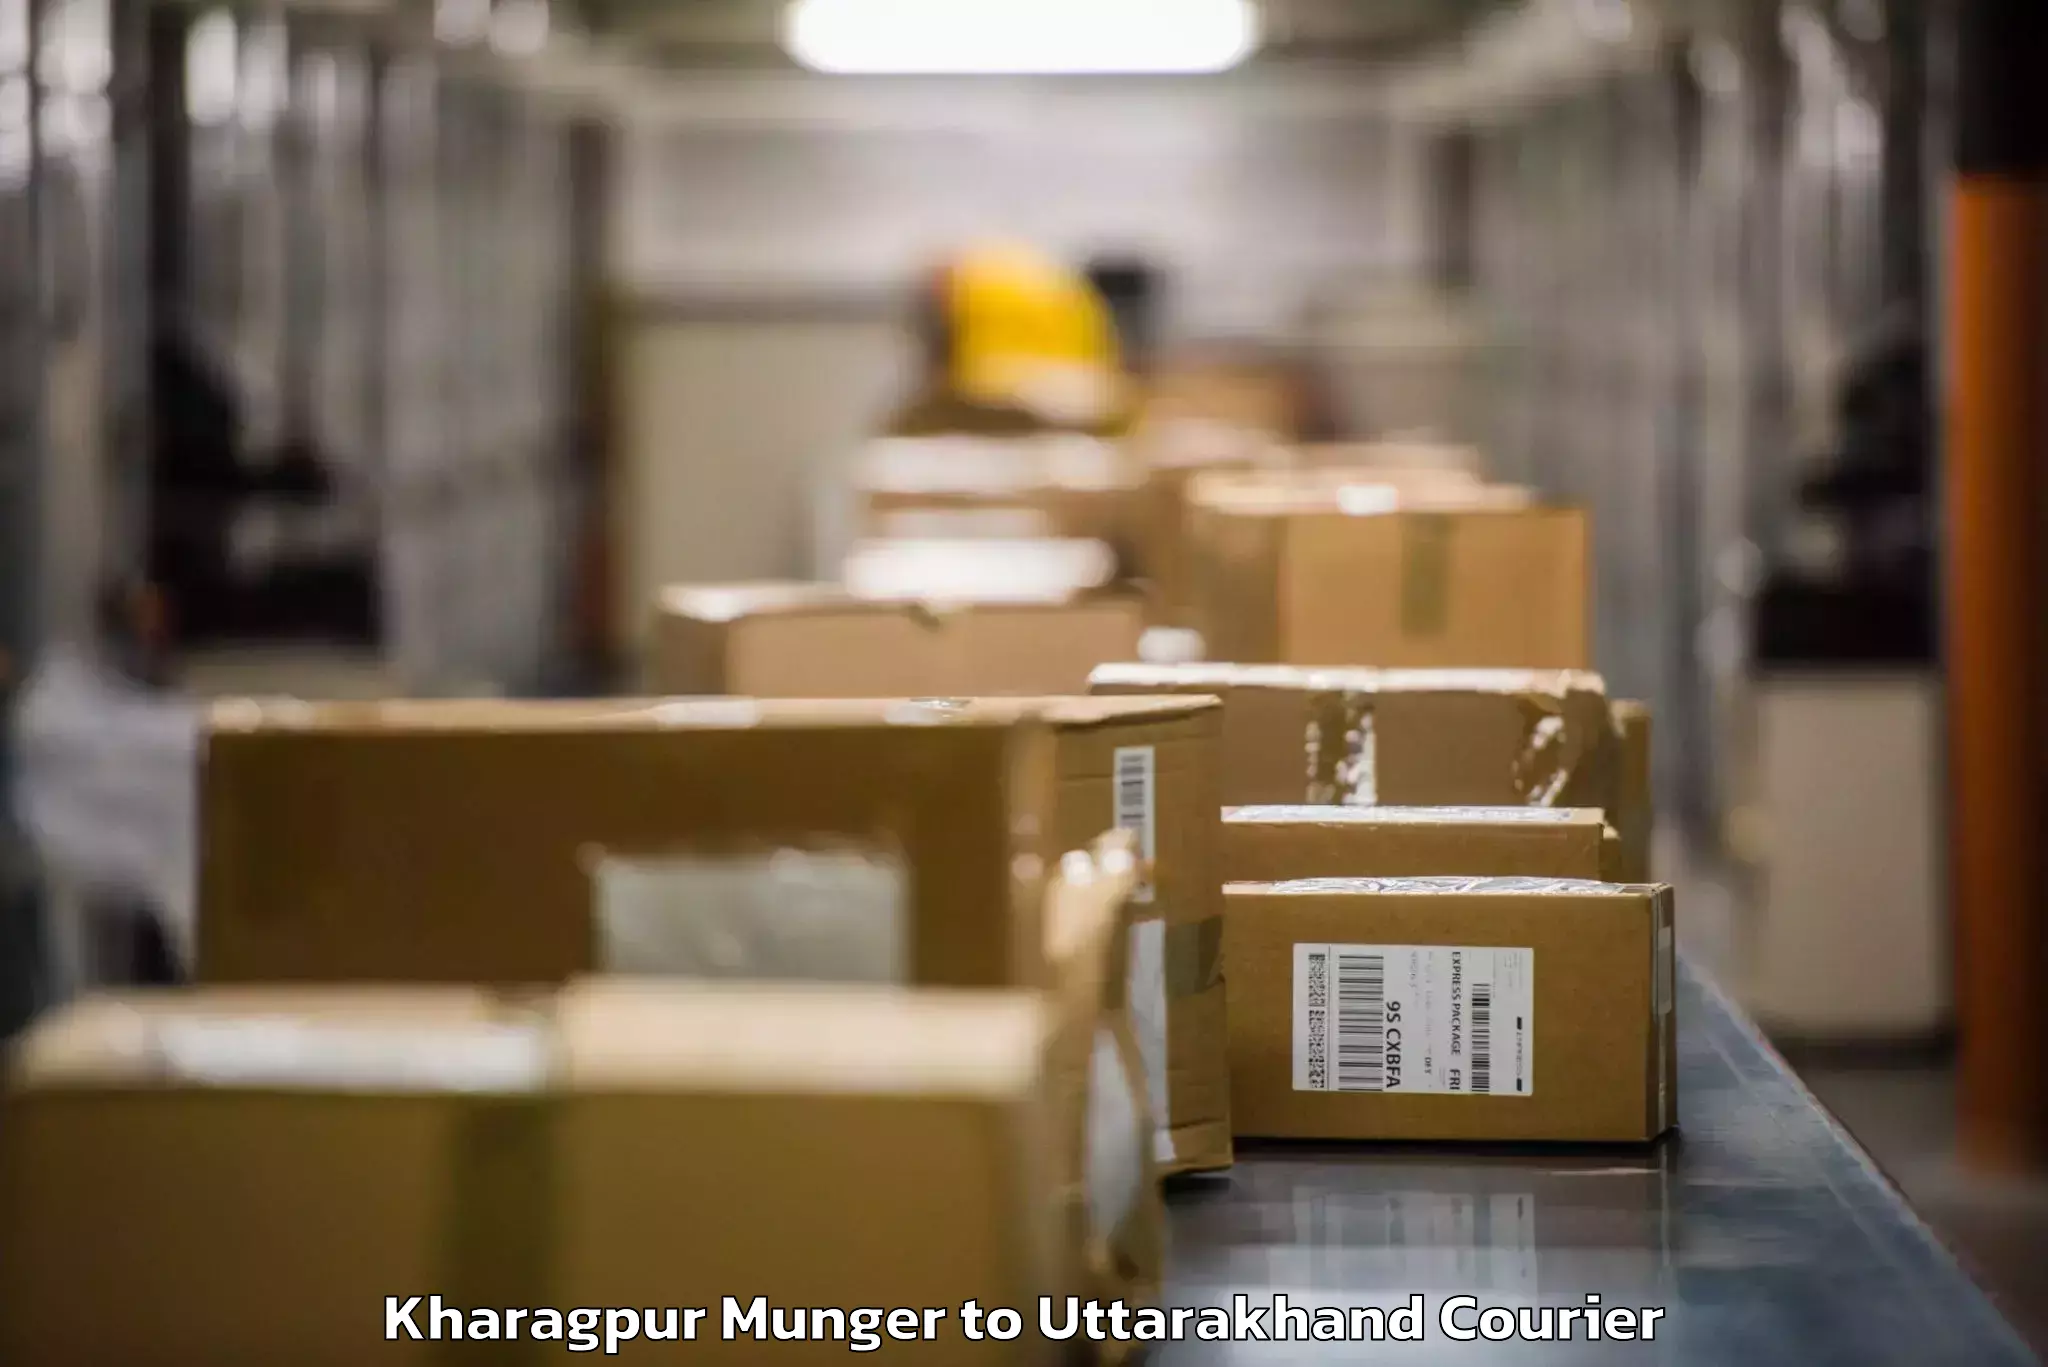 Baggage shipping schedule Kharagpur Munger to Khatima